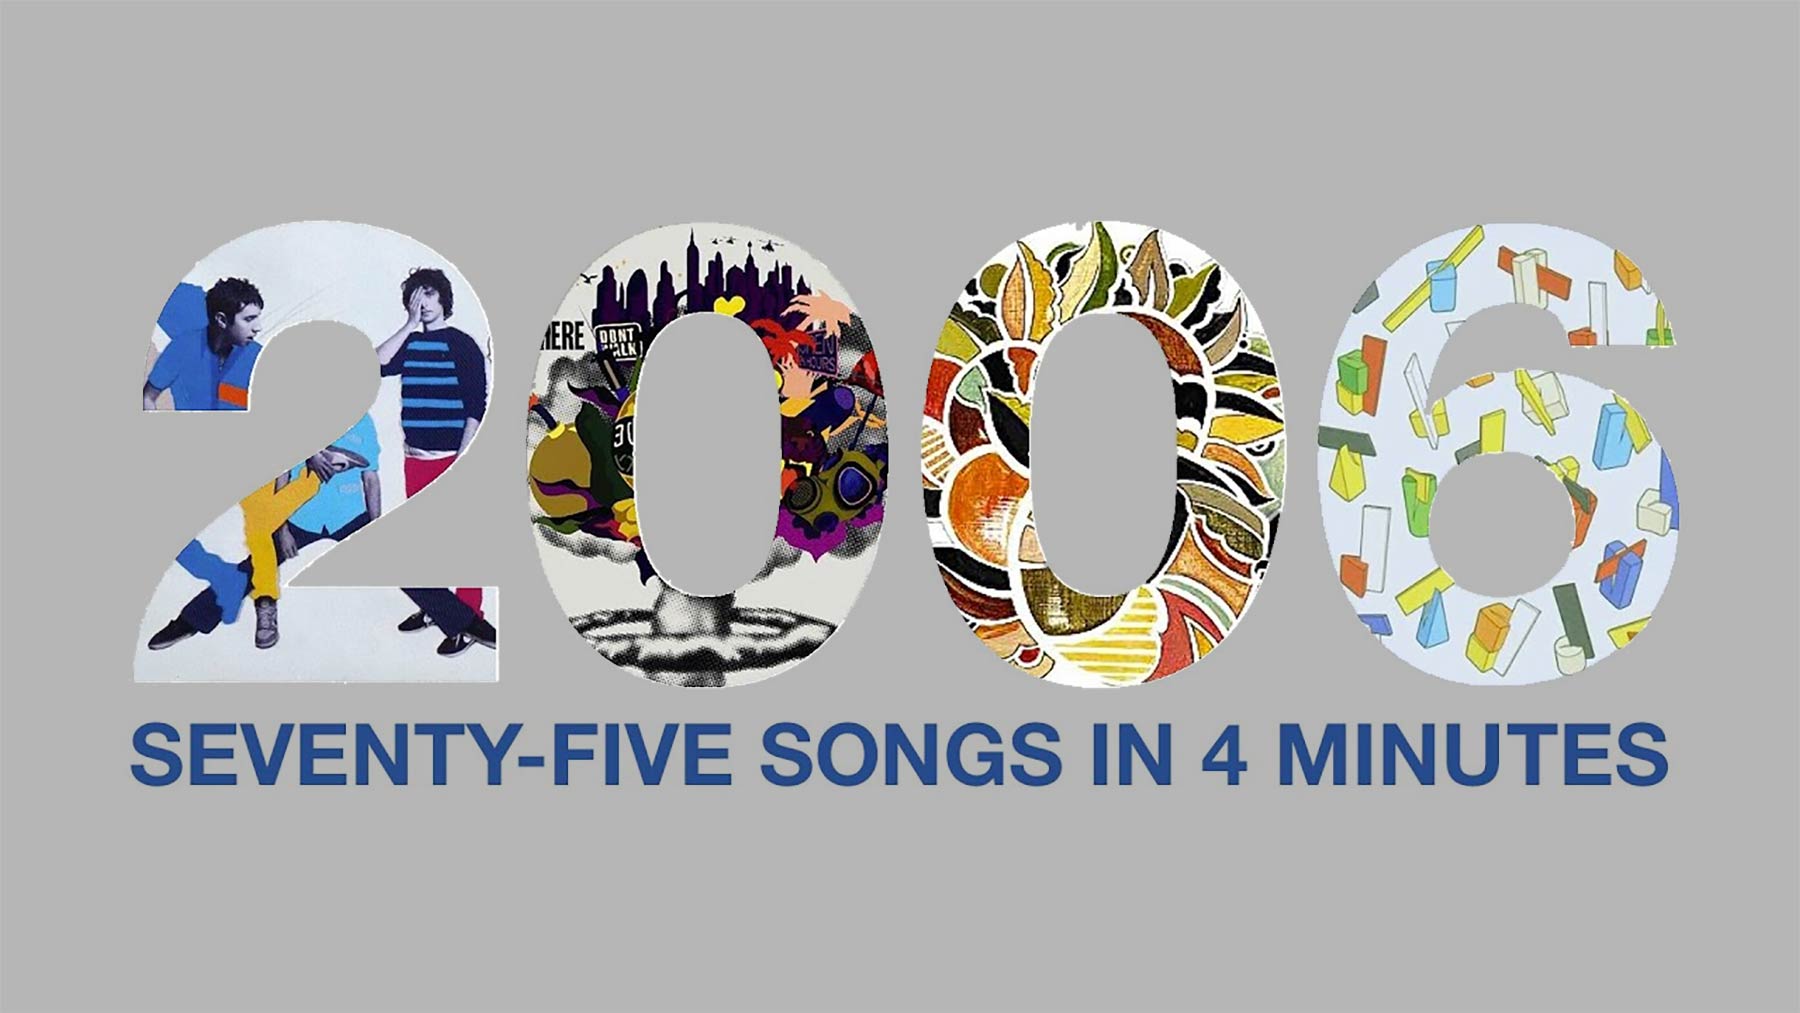 Die 75 besten Lieder des Jahres 2006 im 4-Minuten-Mashup